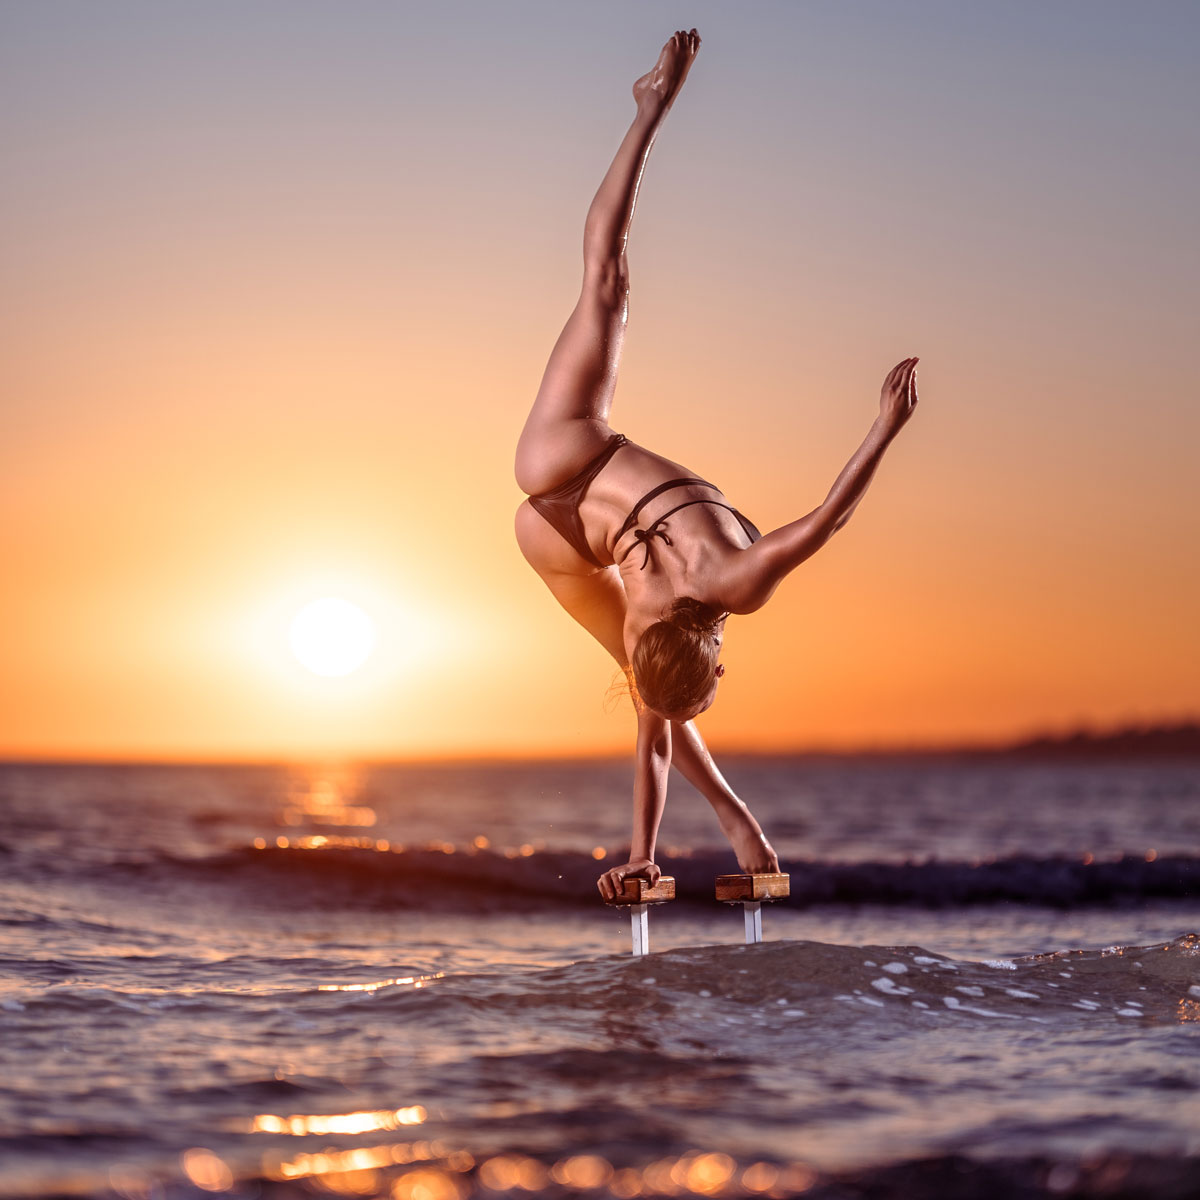 Akrobatikfotografie: Artistin steht im einarmigen Handstand im Sonnenuntergang